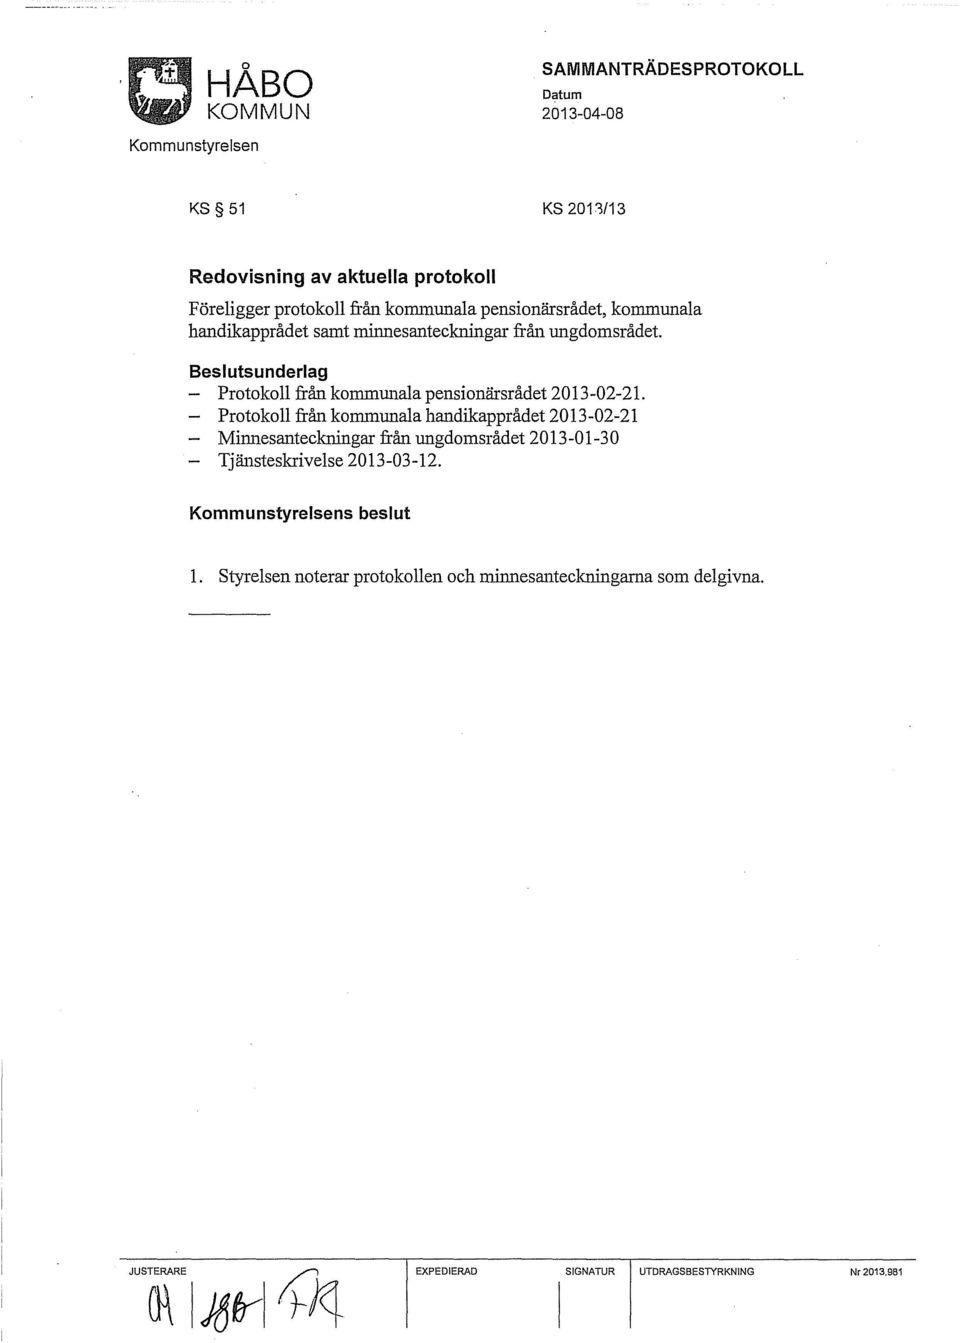 Protokoll från kommunala handikapprådet 2013-02-21 Mimlesanteckningar från ungdomsrådet 2013-01-30 Tjänsteskrivelse 2013-03-12.